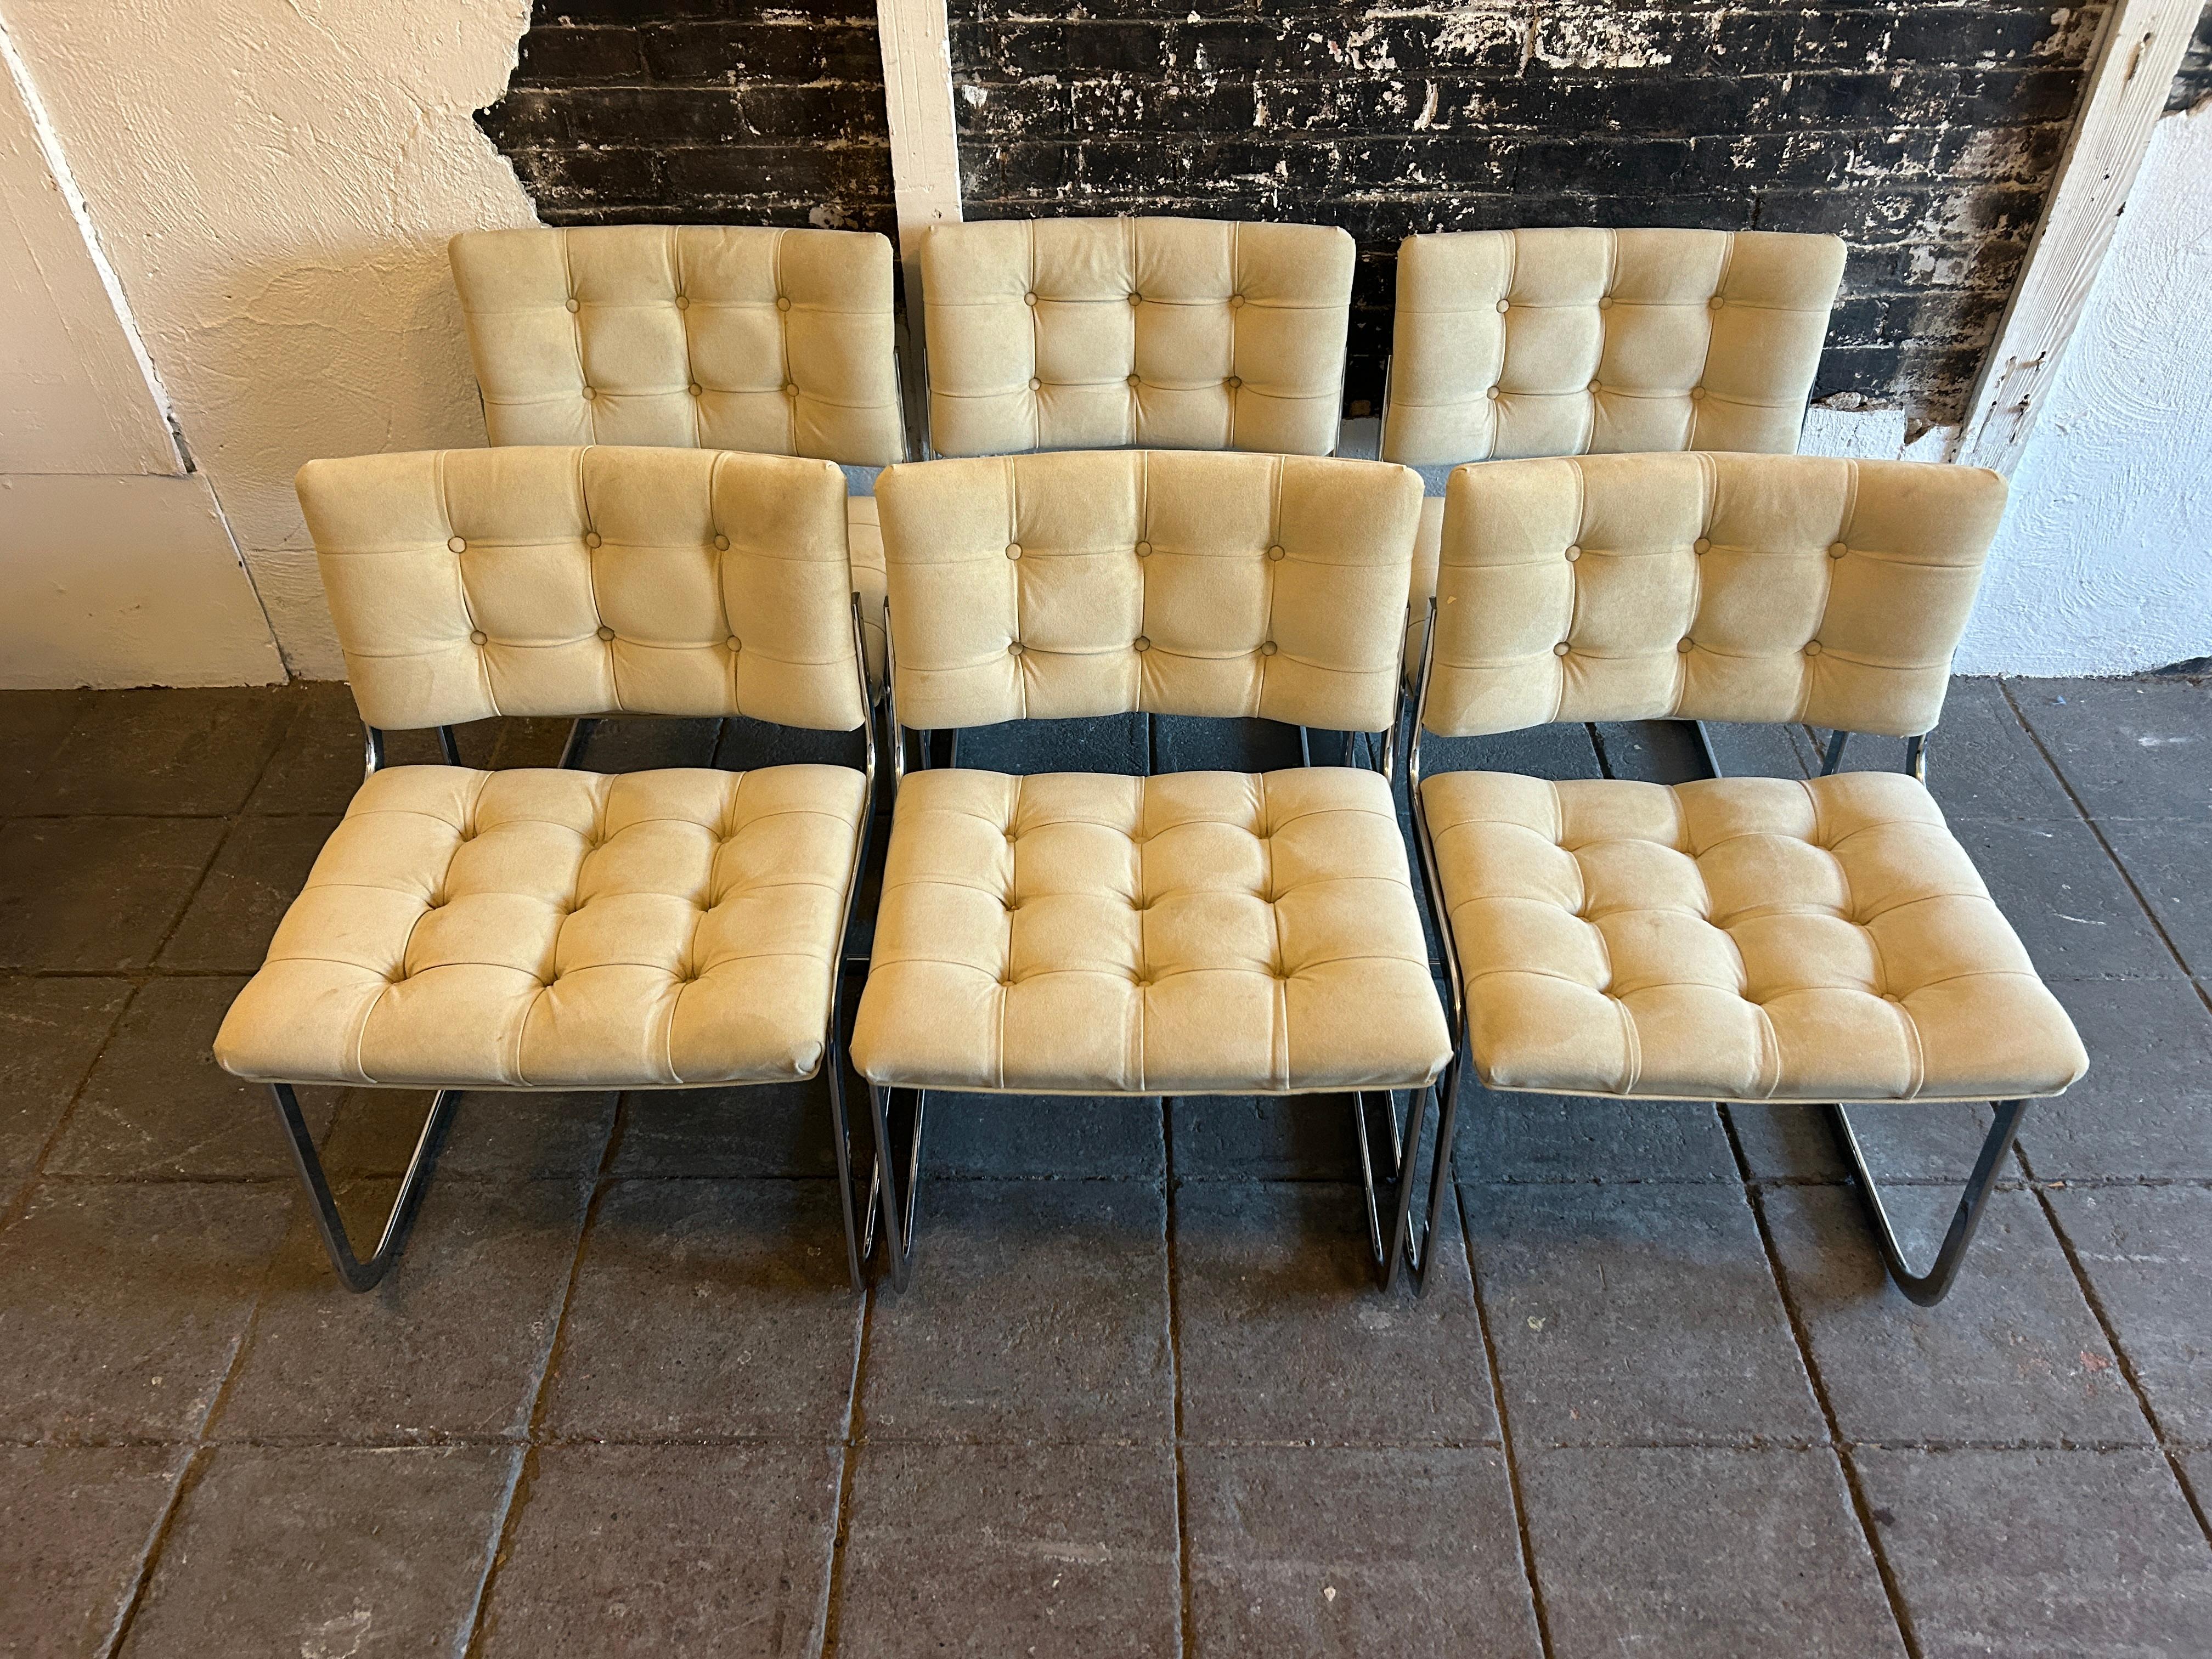 Ein einzigartiger Satz von (8) RH-304 Wildlederstühlen, entworfen von Robert Haussmann und hergestellt von Stendig de Sede. Dieses Set wurde ca. 1960 hergestellt. Die Stühle sind mit hellbraunem Wildleder gepolstert. Die abgerundeten